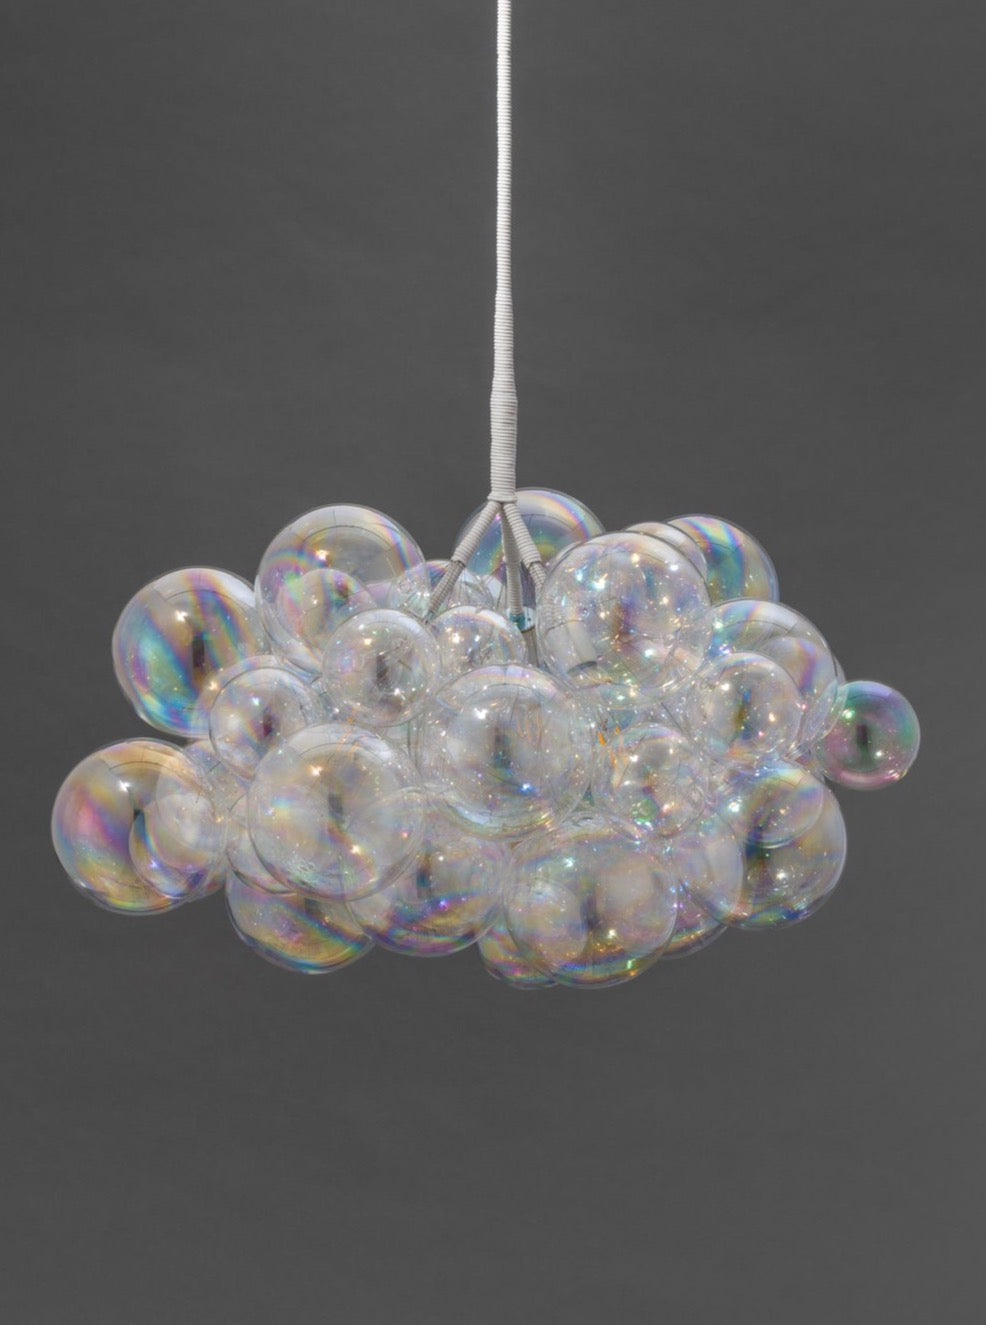 The Iridescent Cumulus Bubble Chandelier